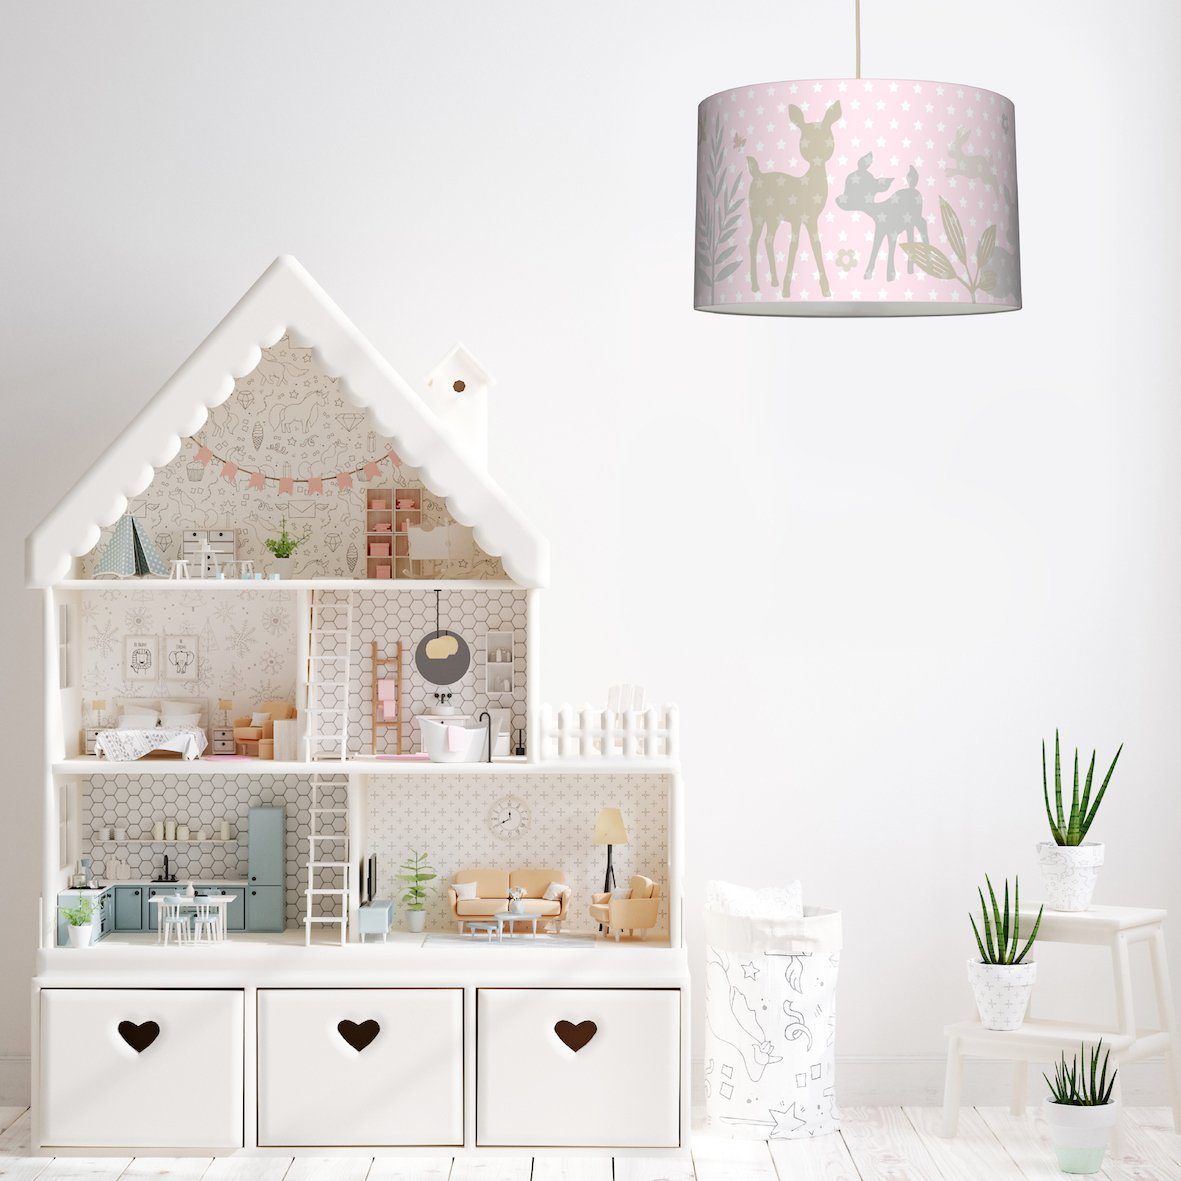 lovely label Pendelleuchte Lampe Hängelampe, & - wechselbar, Kinderzimmer Rehe Häschen LED Warmweiß rosa